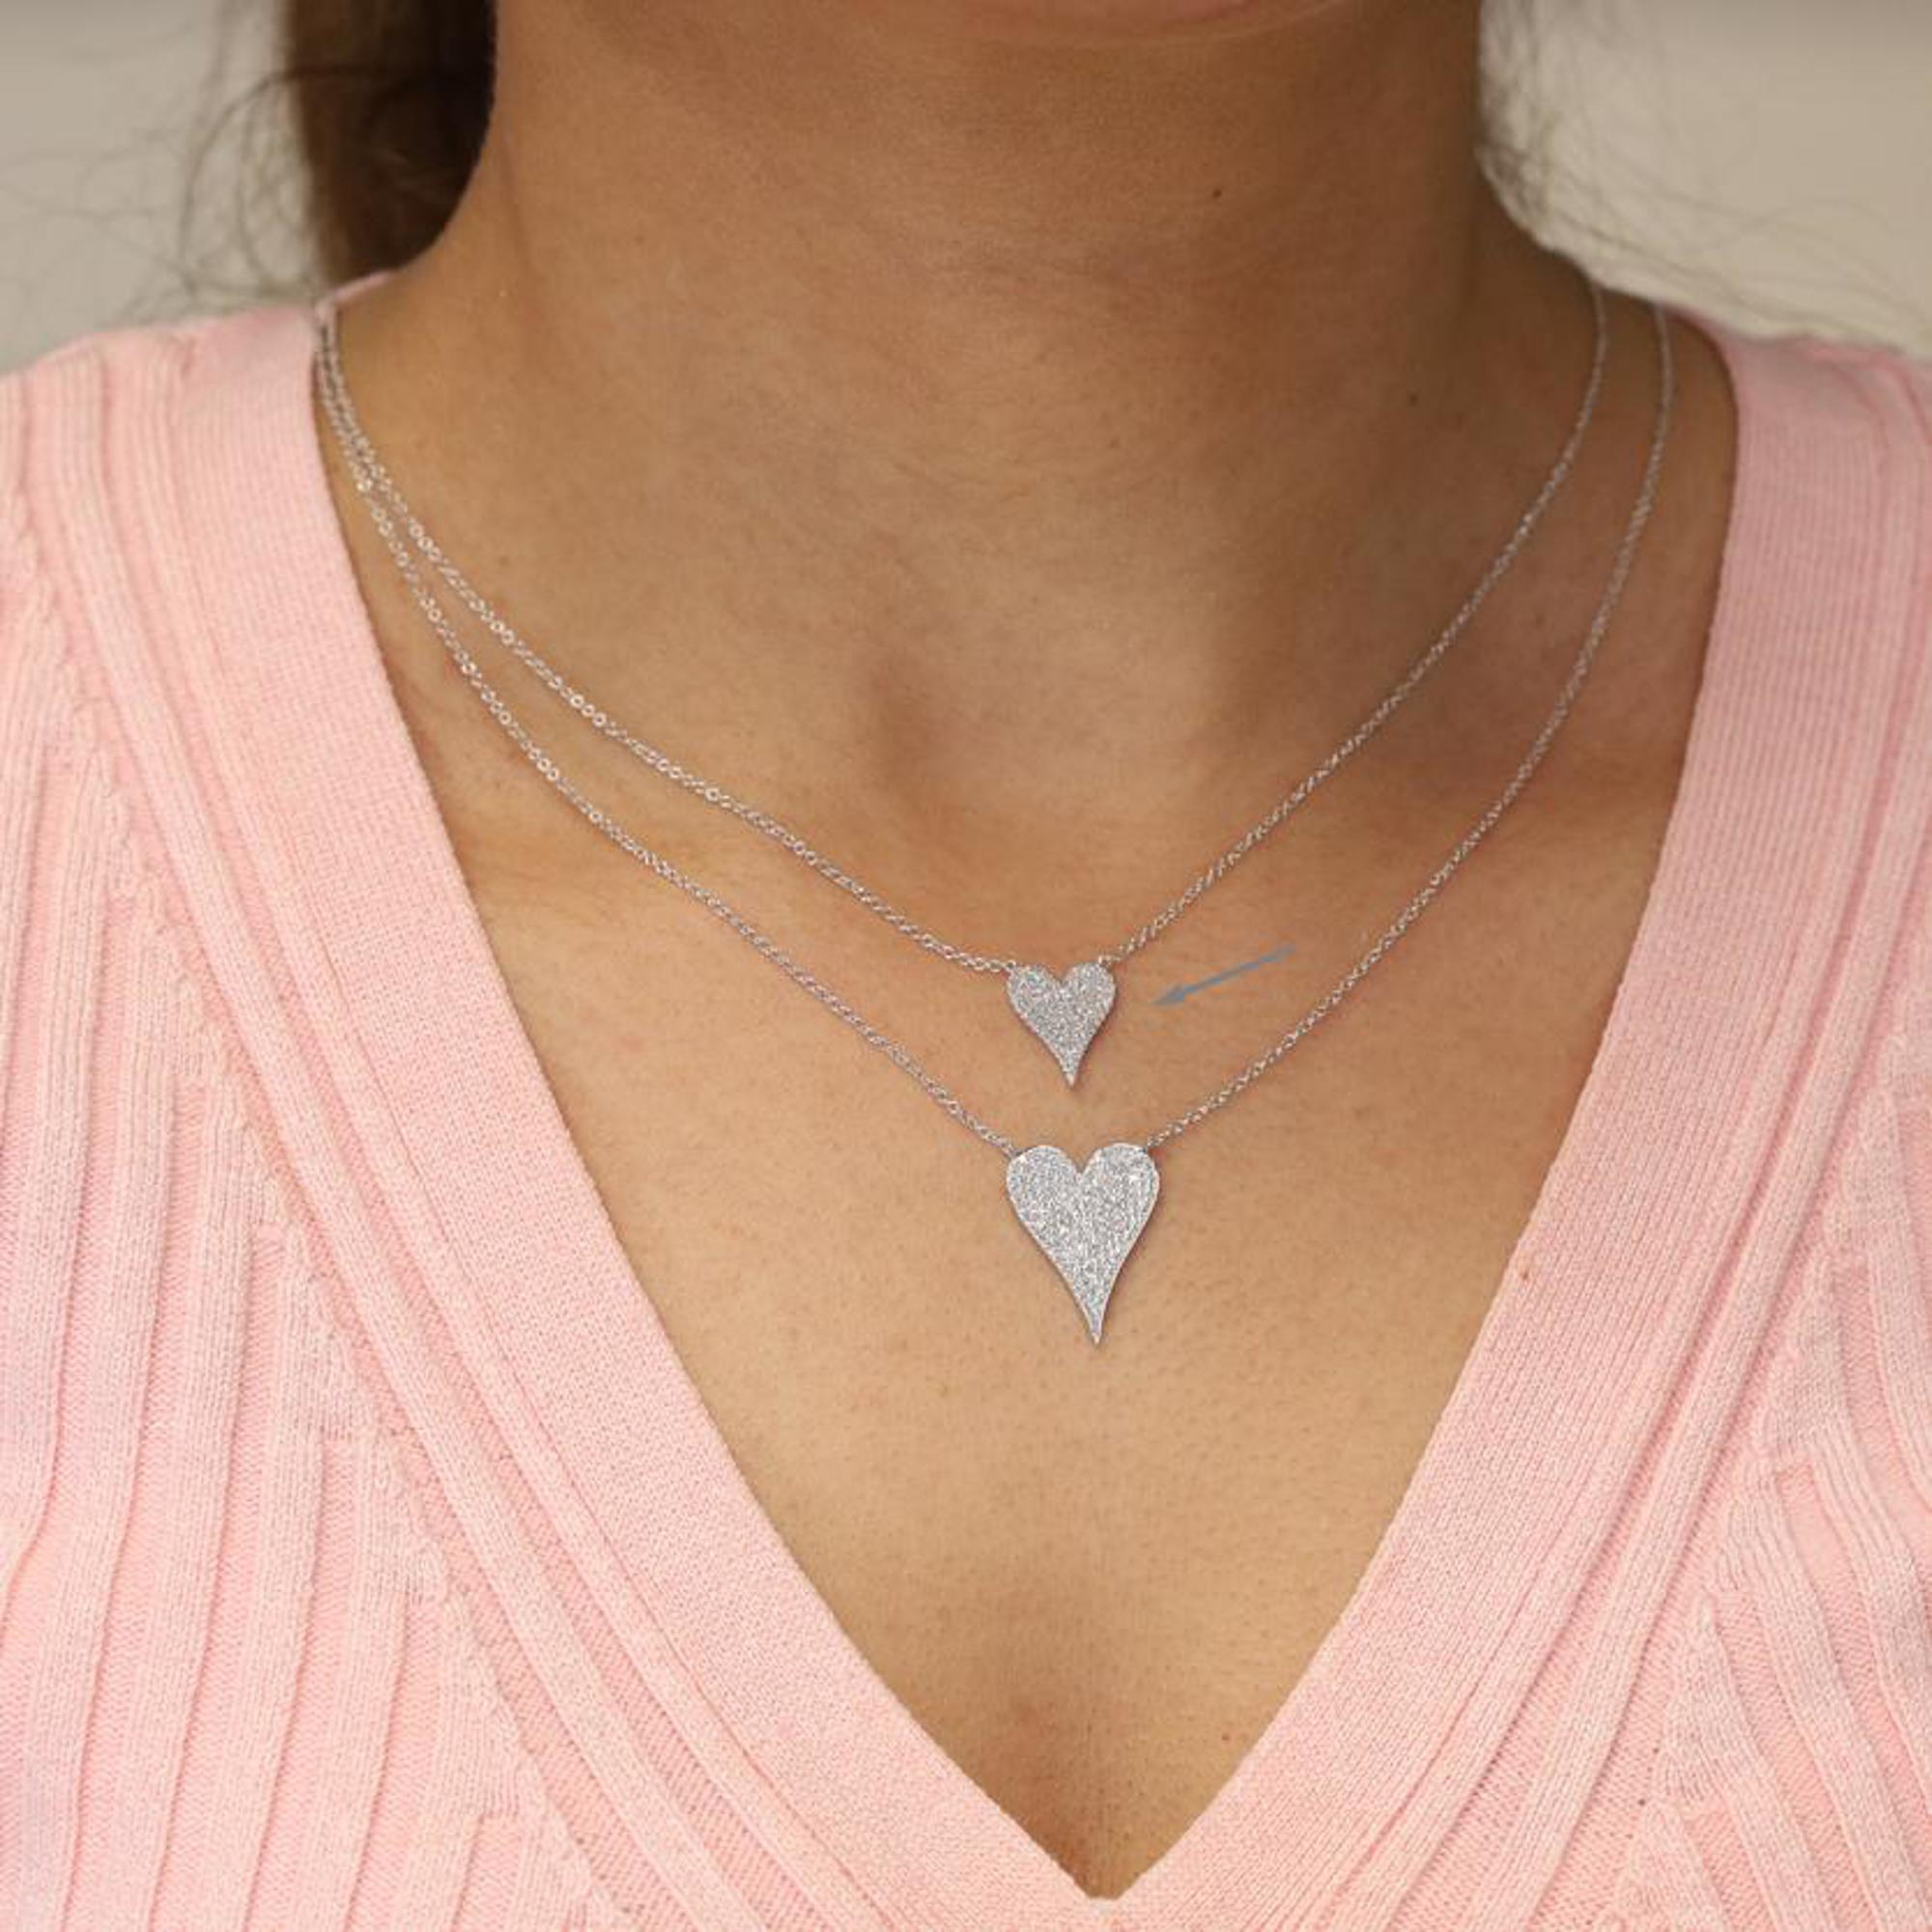 Round Cut Rachel Koen Pave Diamond Heart Pendant Necklace 14K White Gold 0.21Cttw For Sale